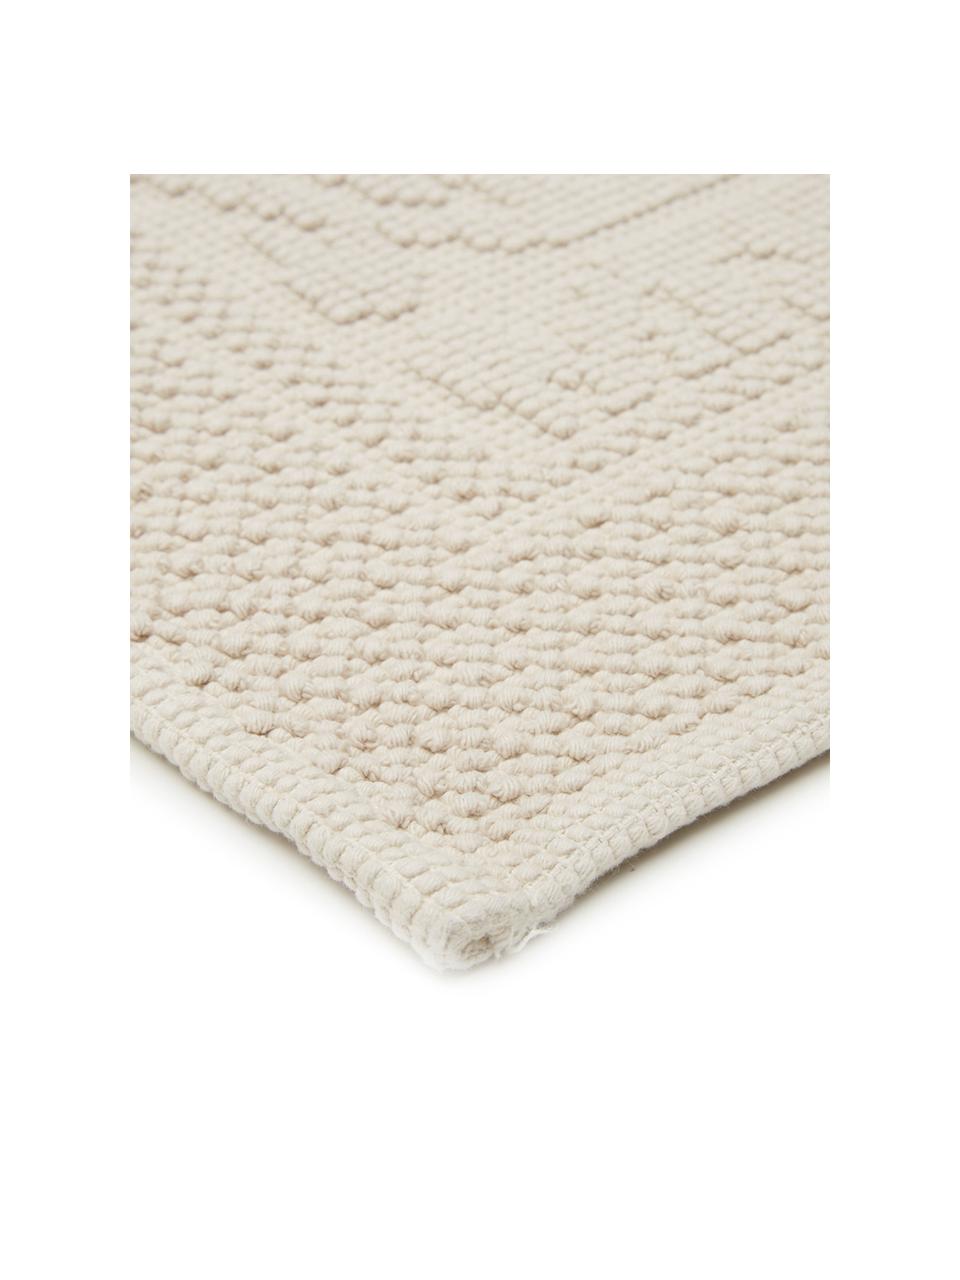 Baumwoll-Badvorleger Hammam mit Hoch-Tief-Muster, 100% Baumwolle, schwere Qualität, 1700 g/m², Beige, B 60 x L 80 cm